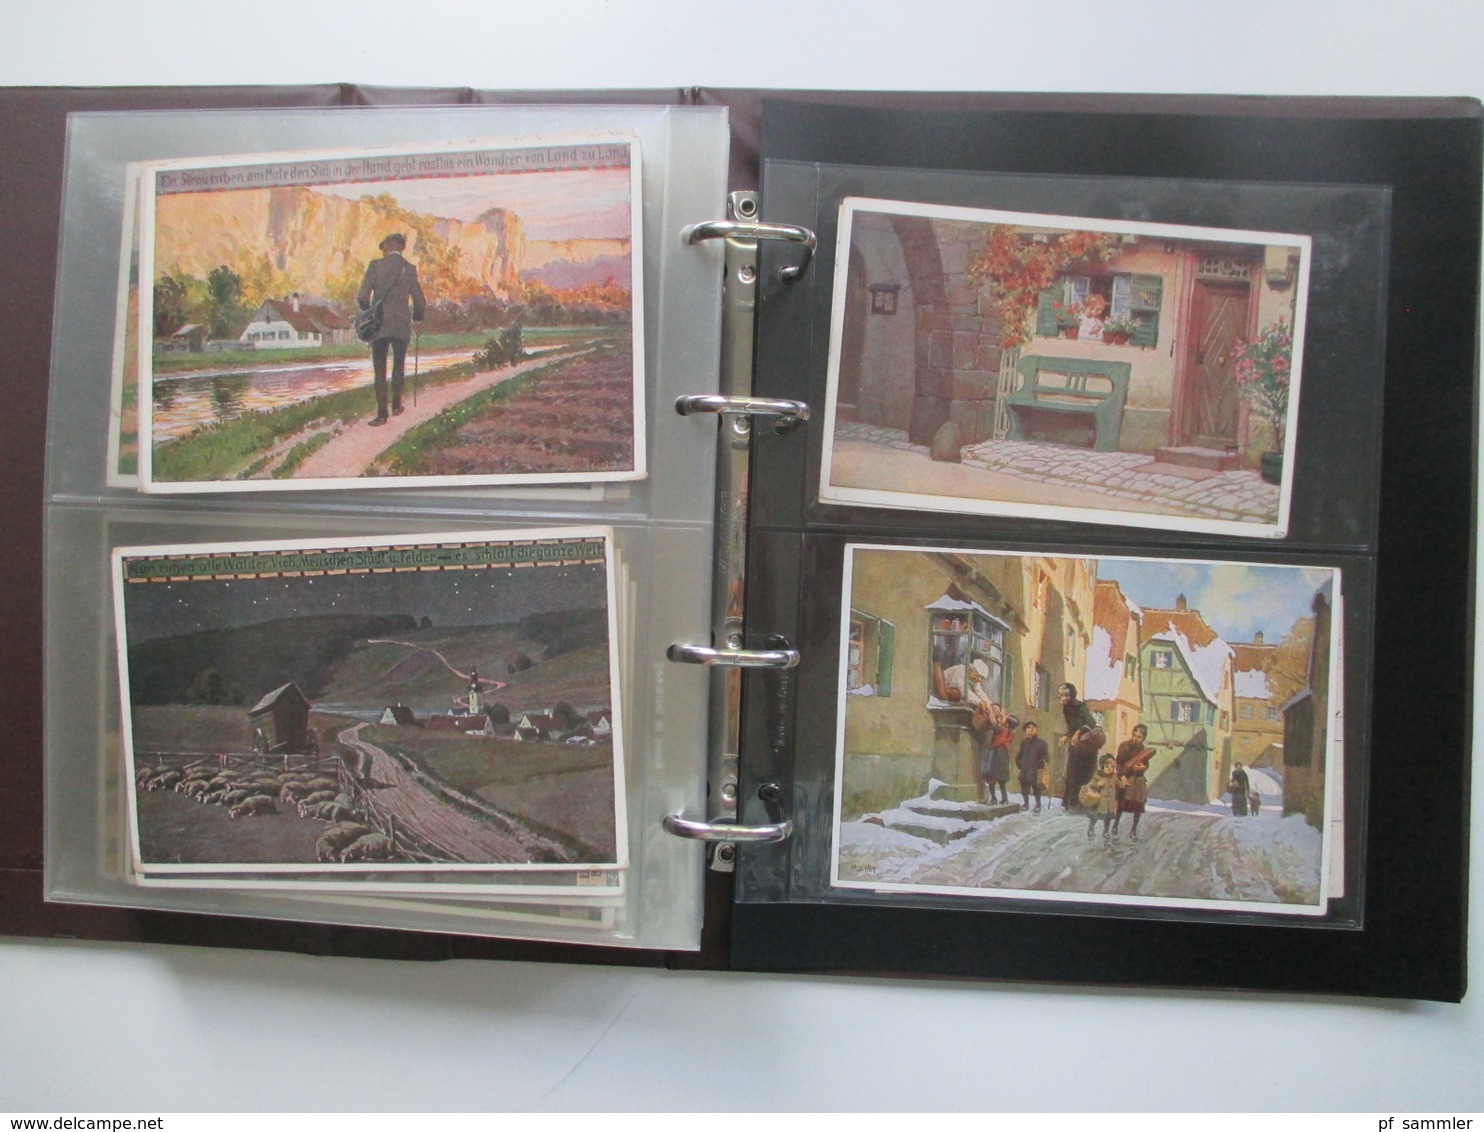 Künstlerkarten 1920er Jahre Paul Hey Sammlung im Ordner mit 176 Karten. Gelaufen / ungelaufen! Fundgrube!!